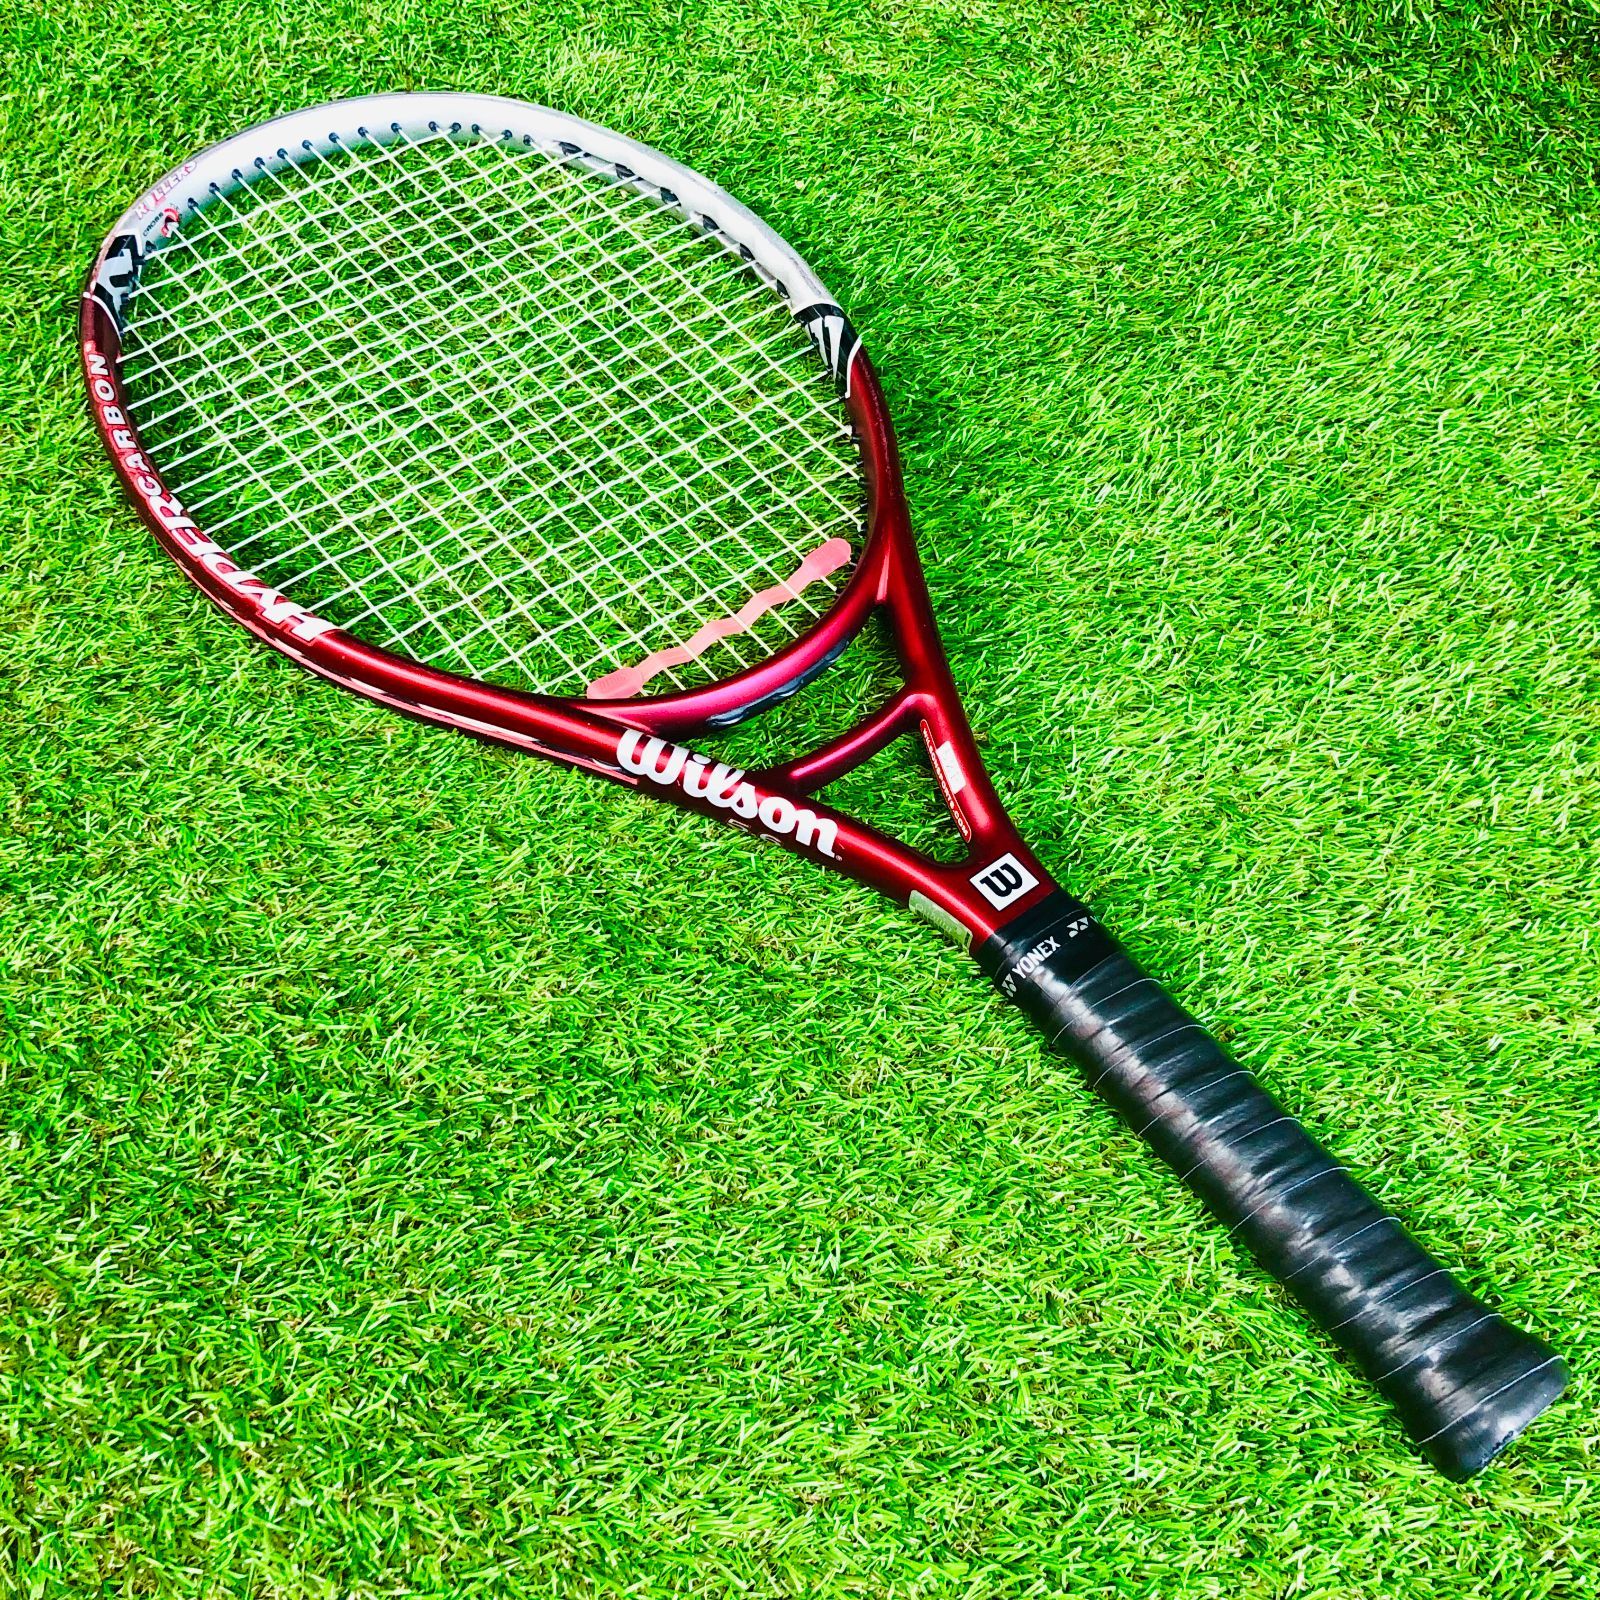 中古 テニスラケット ウィルソン ハイパー ハンマー 5.6 ローラー 110 2002年モデル (G2)WILSON HYPER HAMMER  5.6 ROLLERS